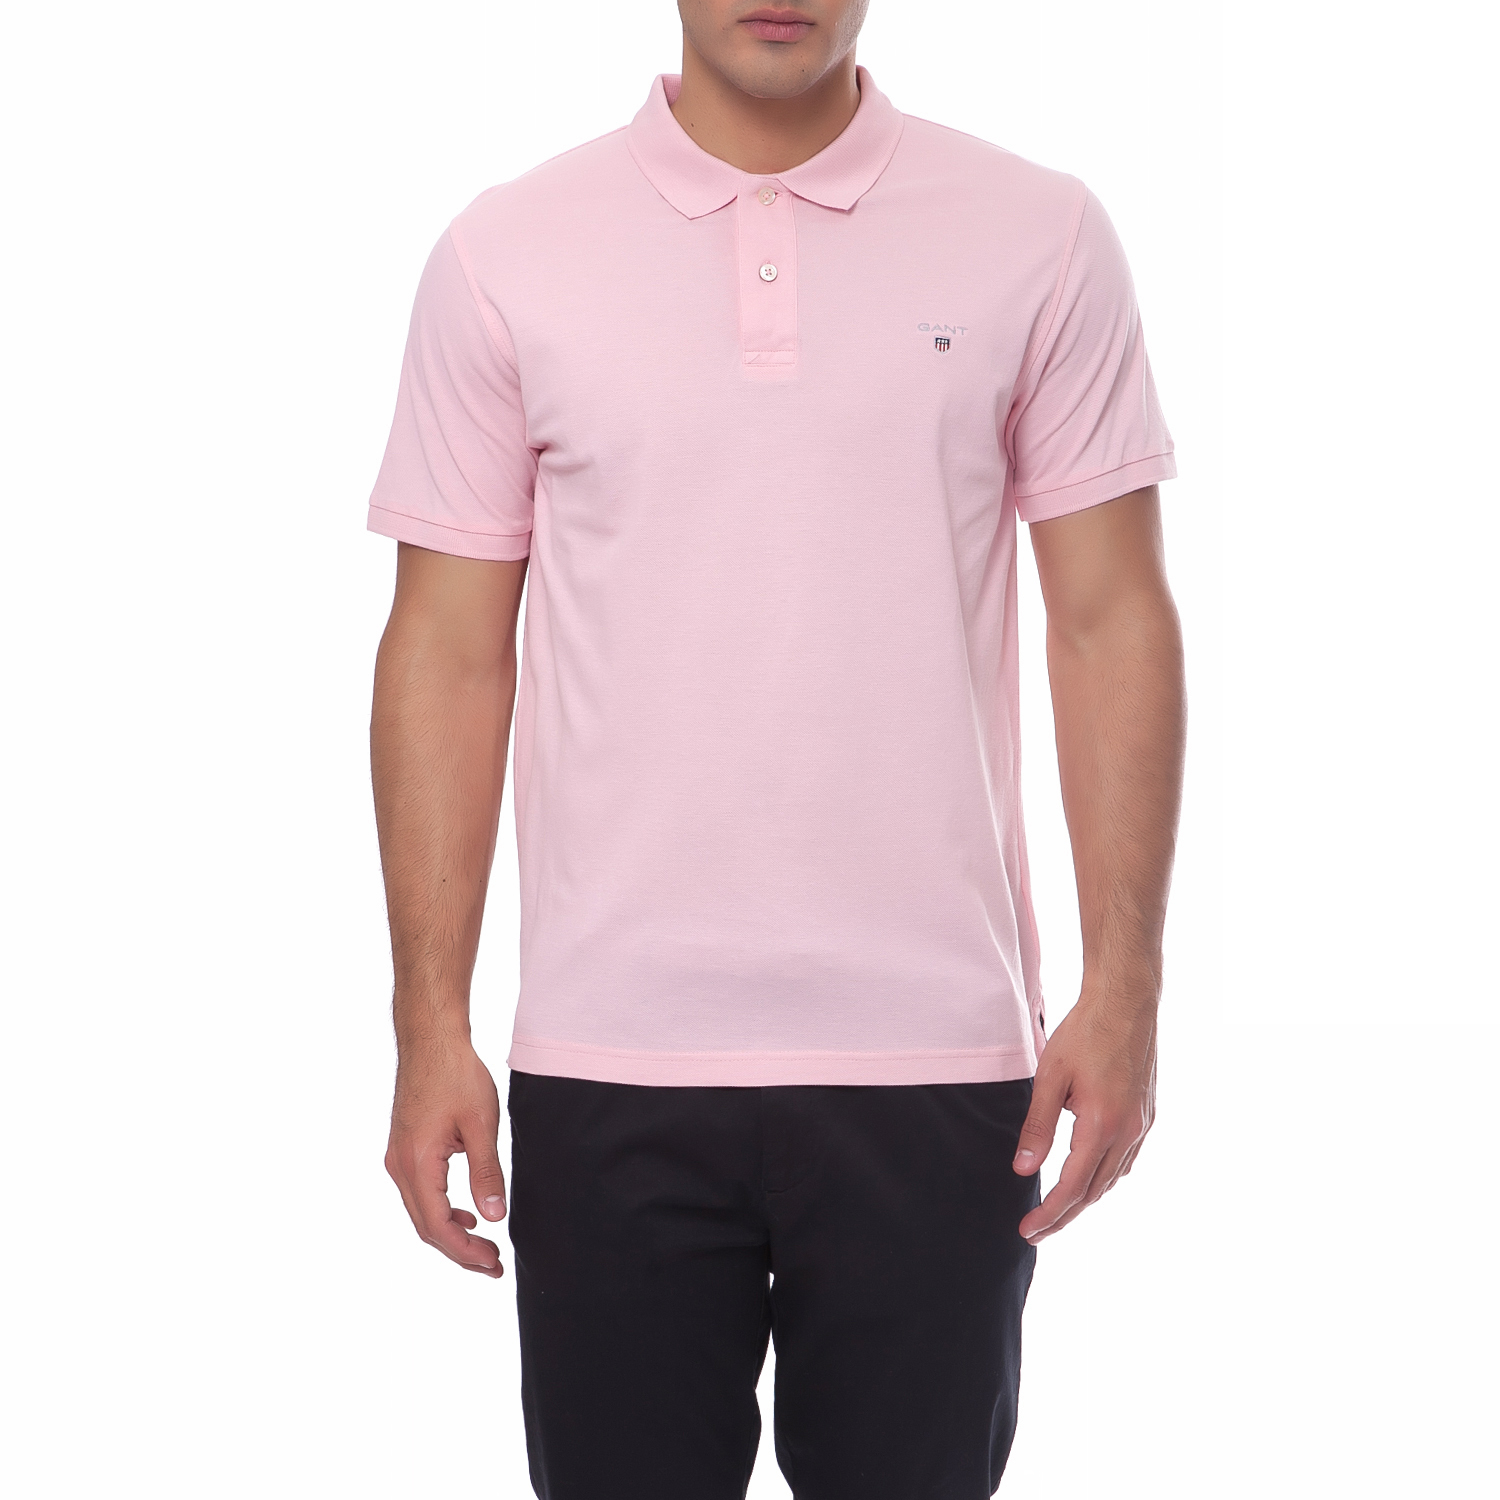 Ανδρικά/Ρούχα/Μπλούζες/Πόλο GANT - Ανδρική μπλούζα Gant ροζ